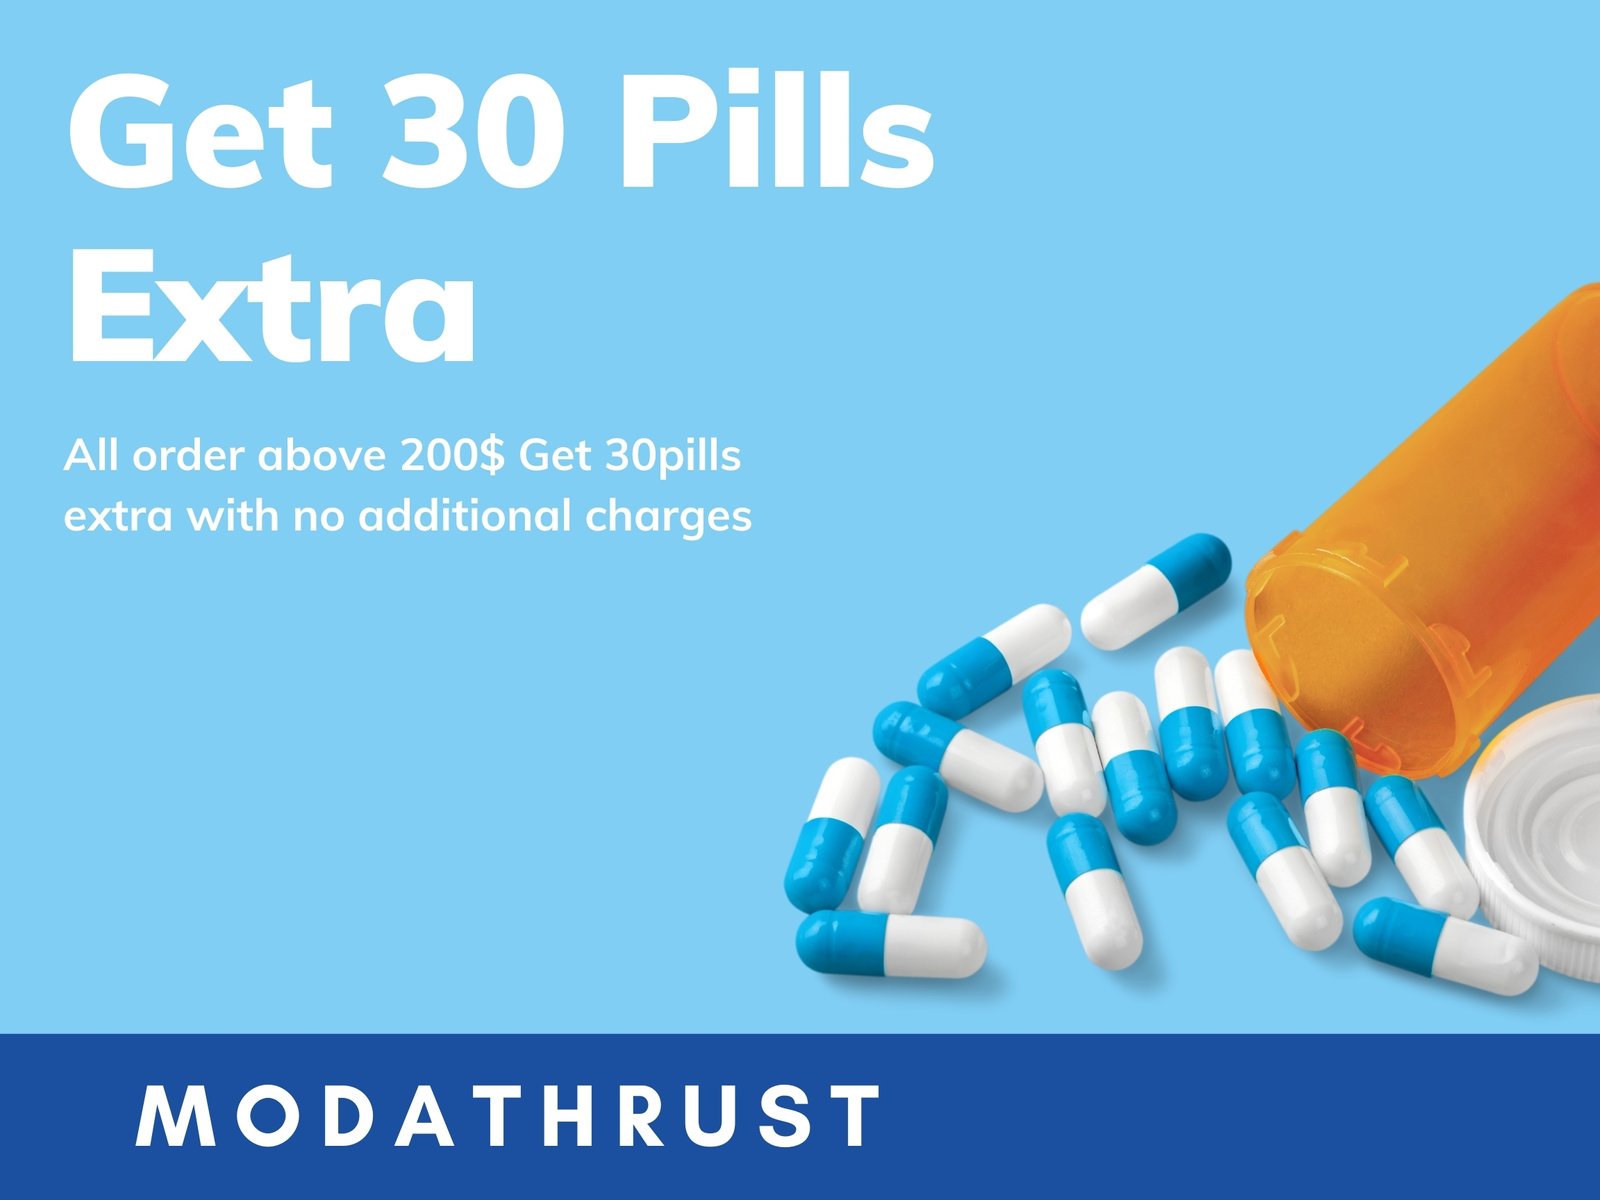 Modafinil free pills offer